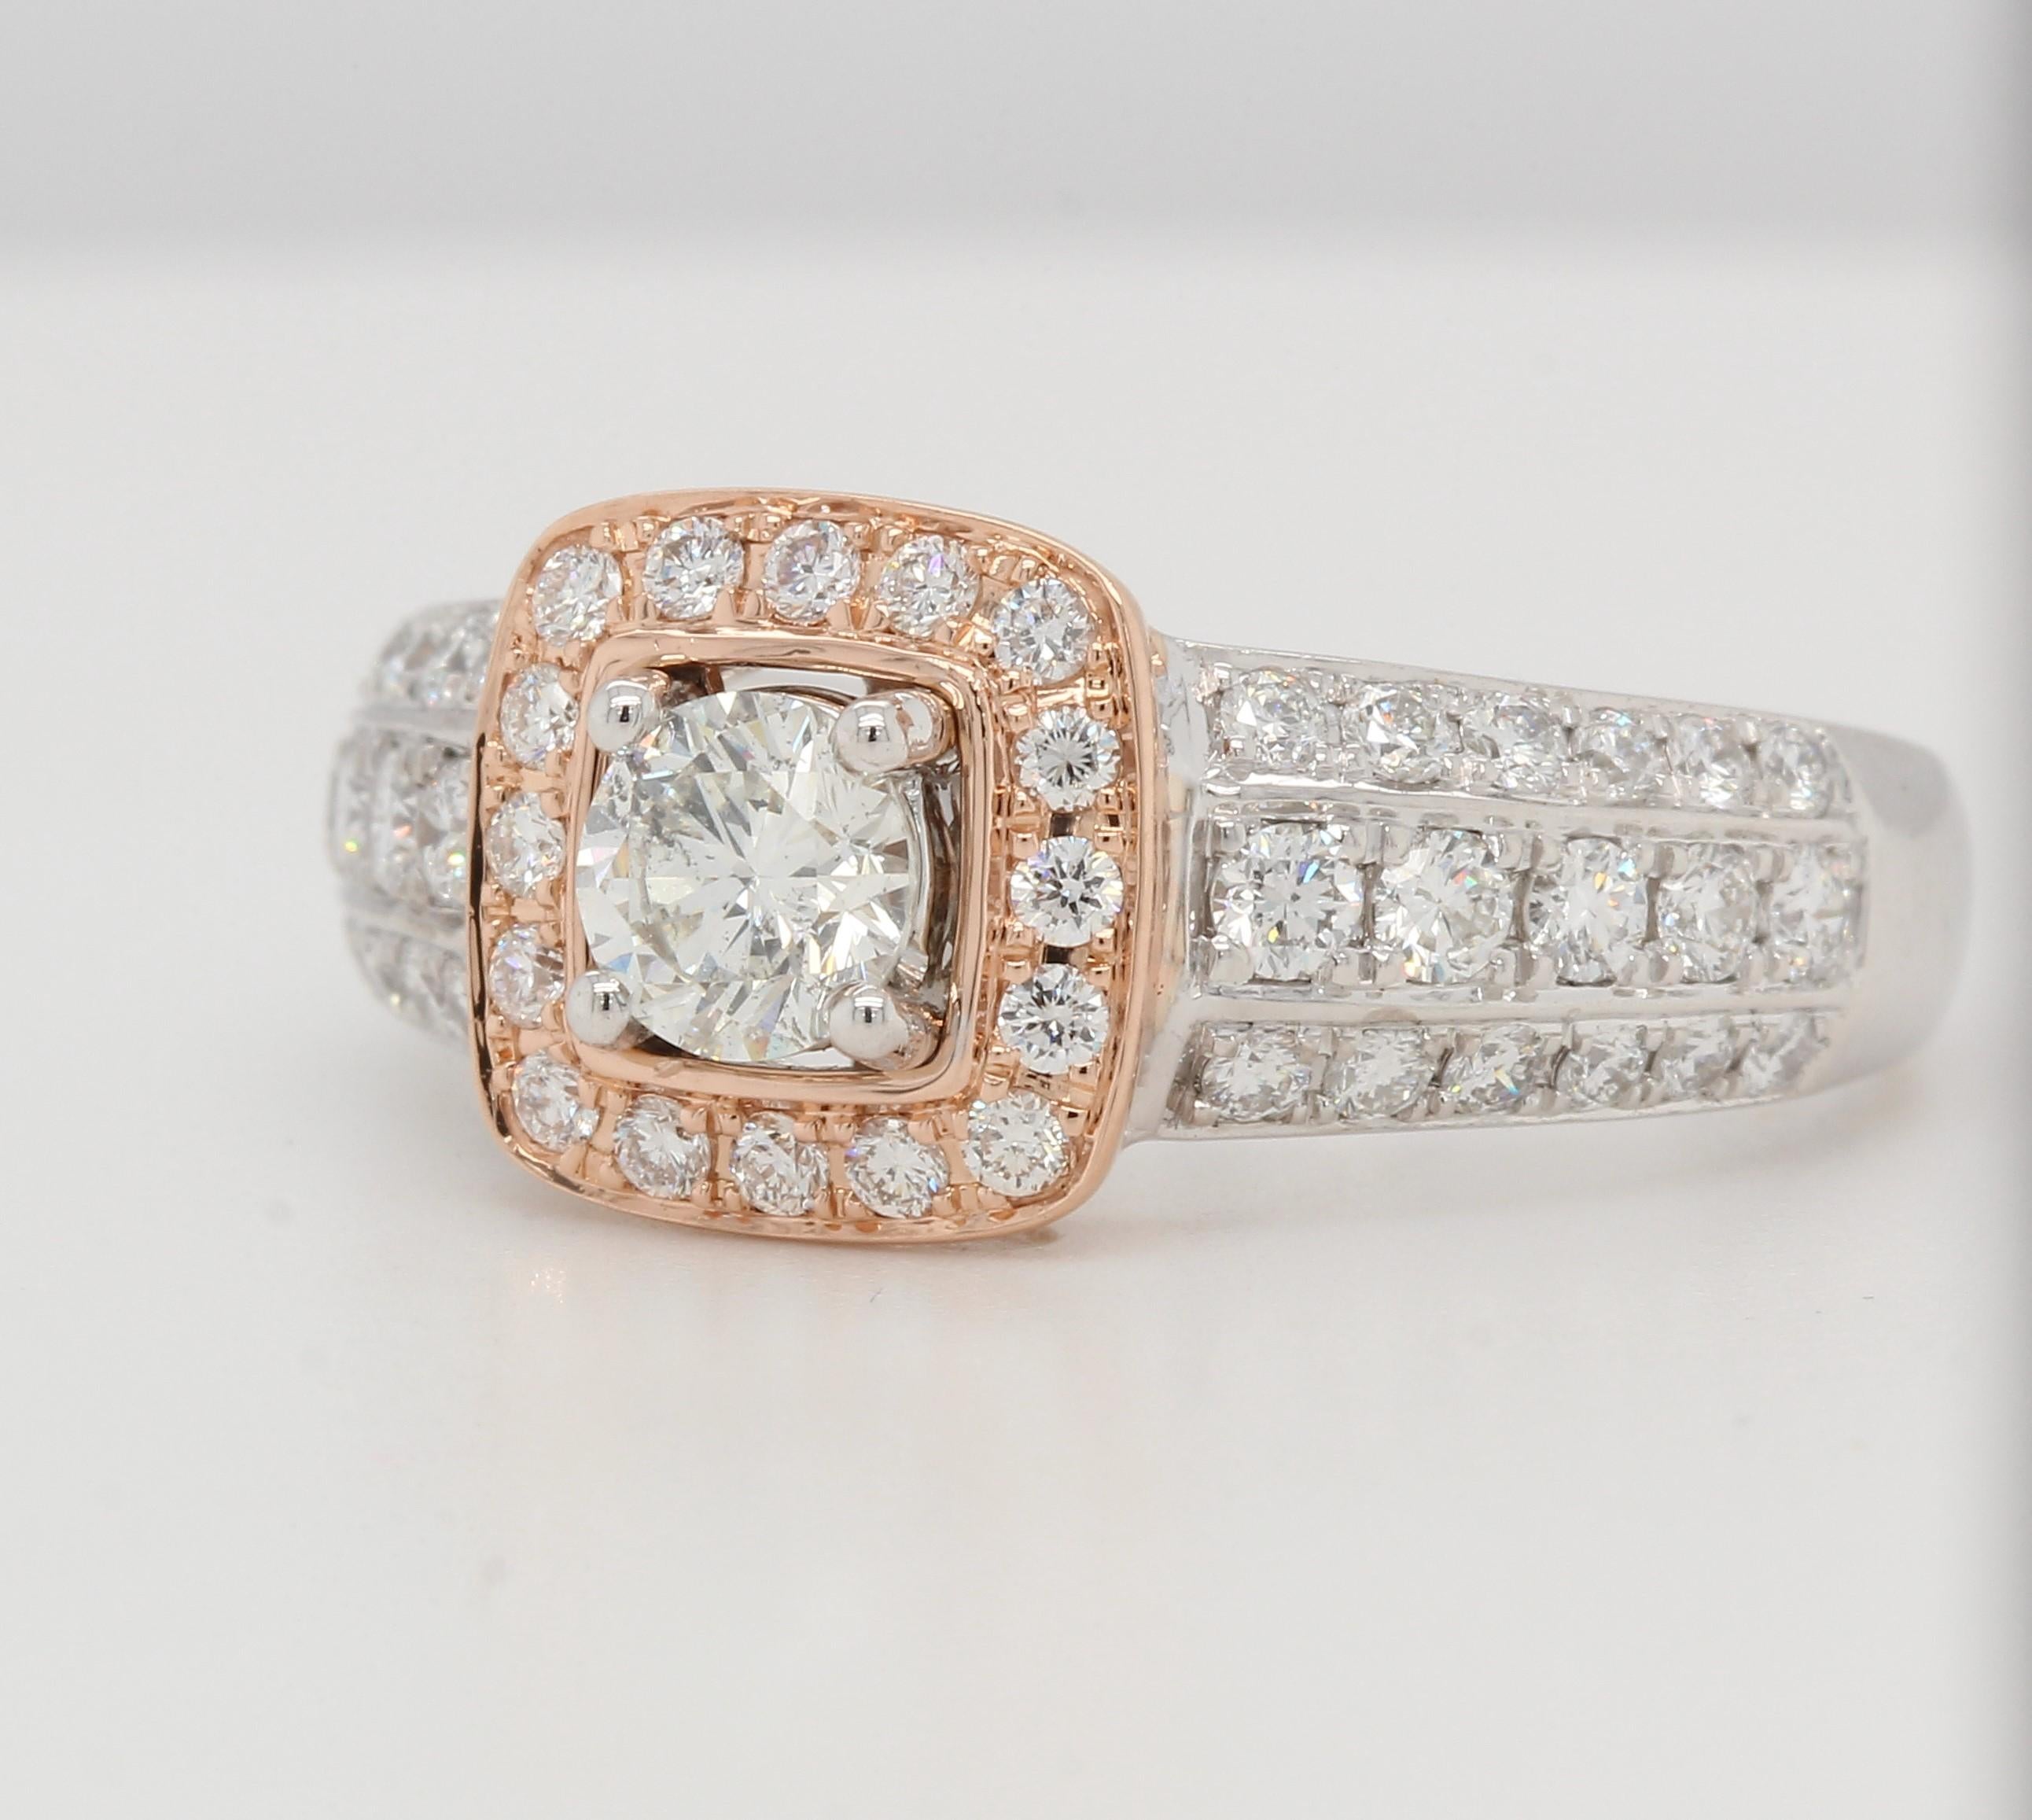 Women's or Men's 1.05 Carat Diamond Wedding Ring in 18 Karat Gold For Sale